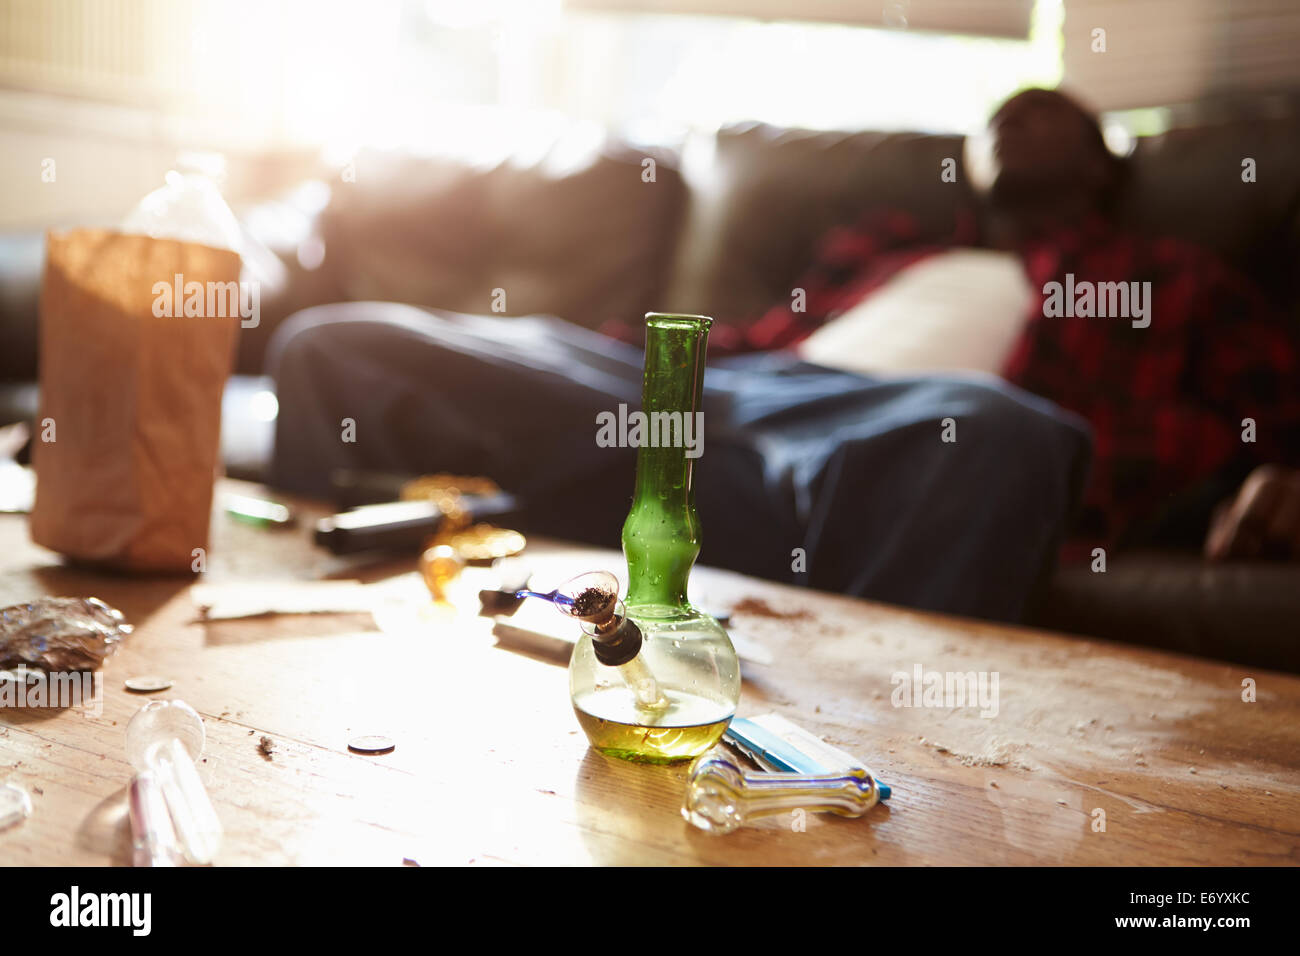 El hombre se desplomó en el sofá con parafernalia de drogas en primer plano Foto de stock